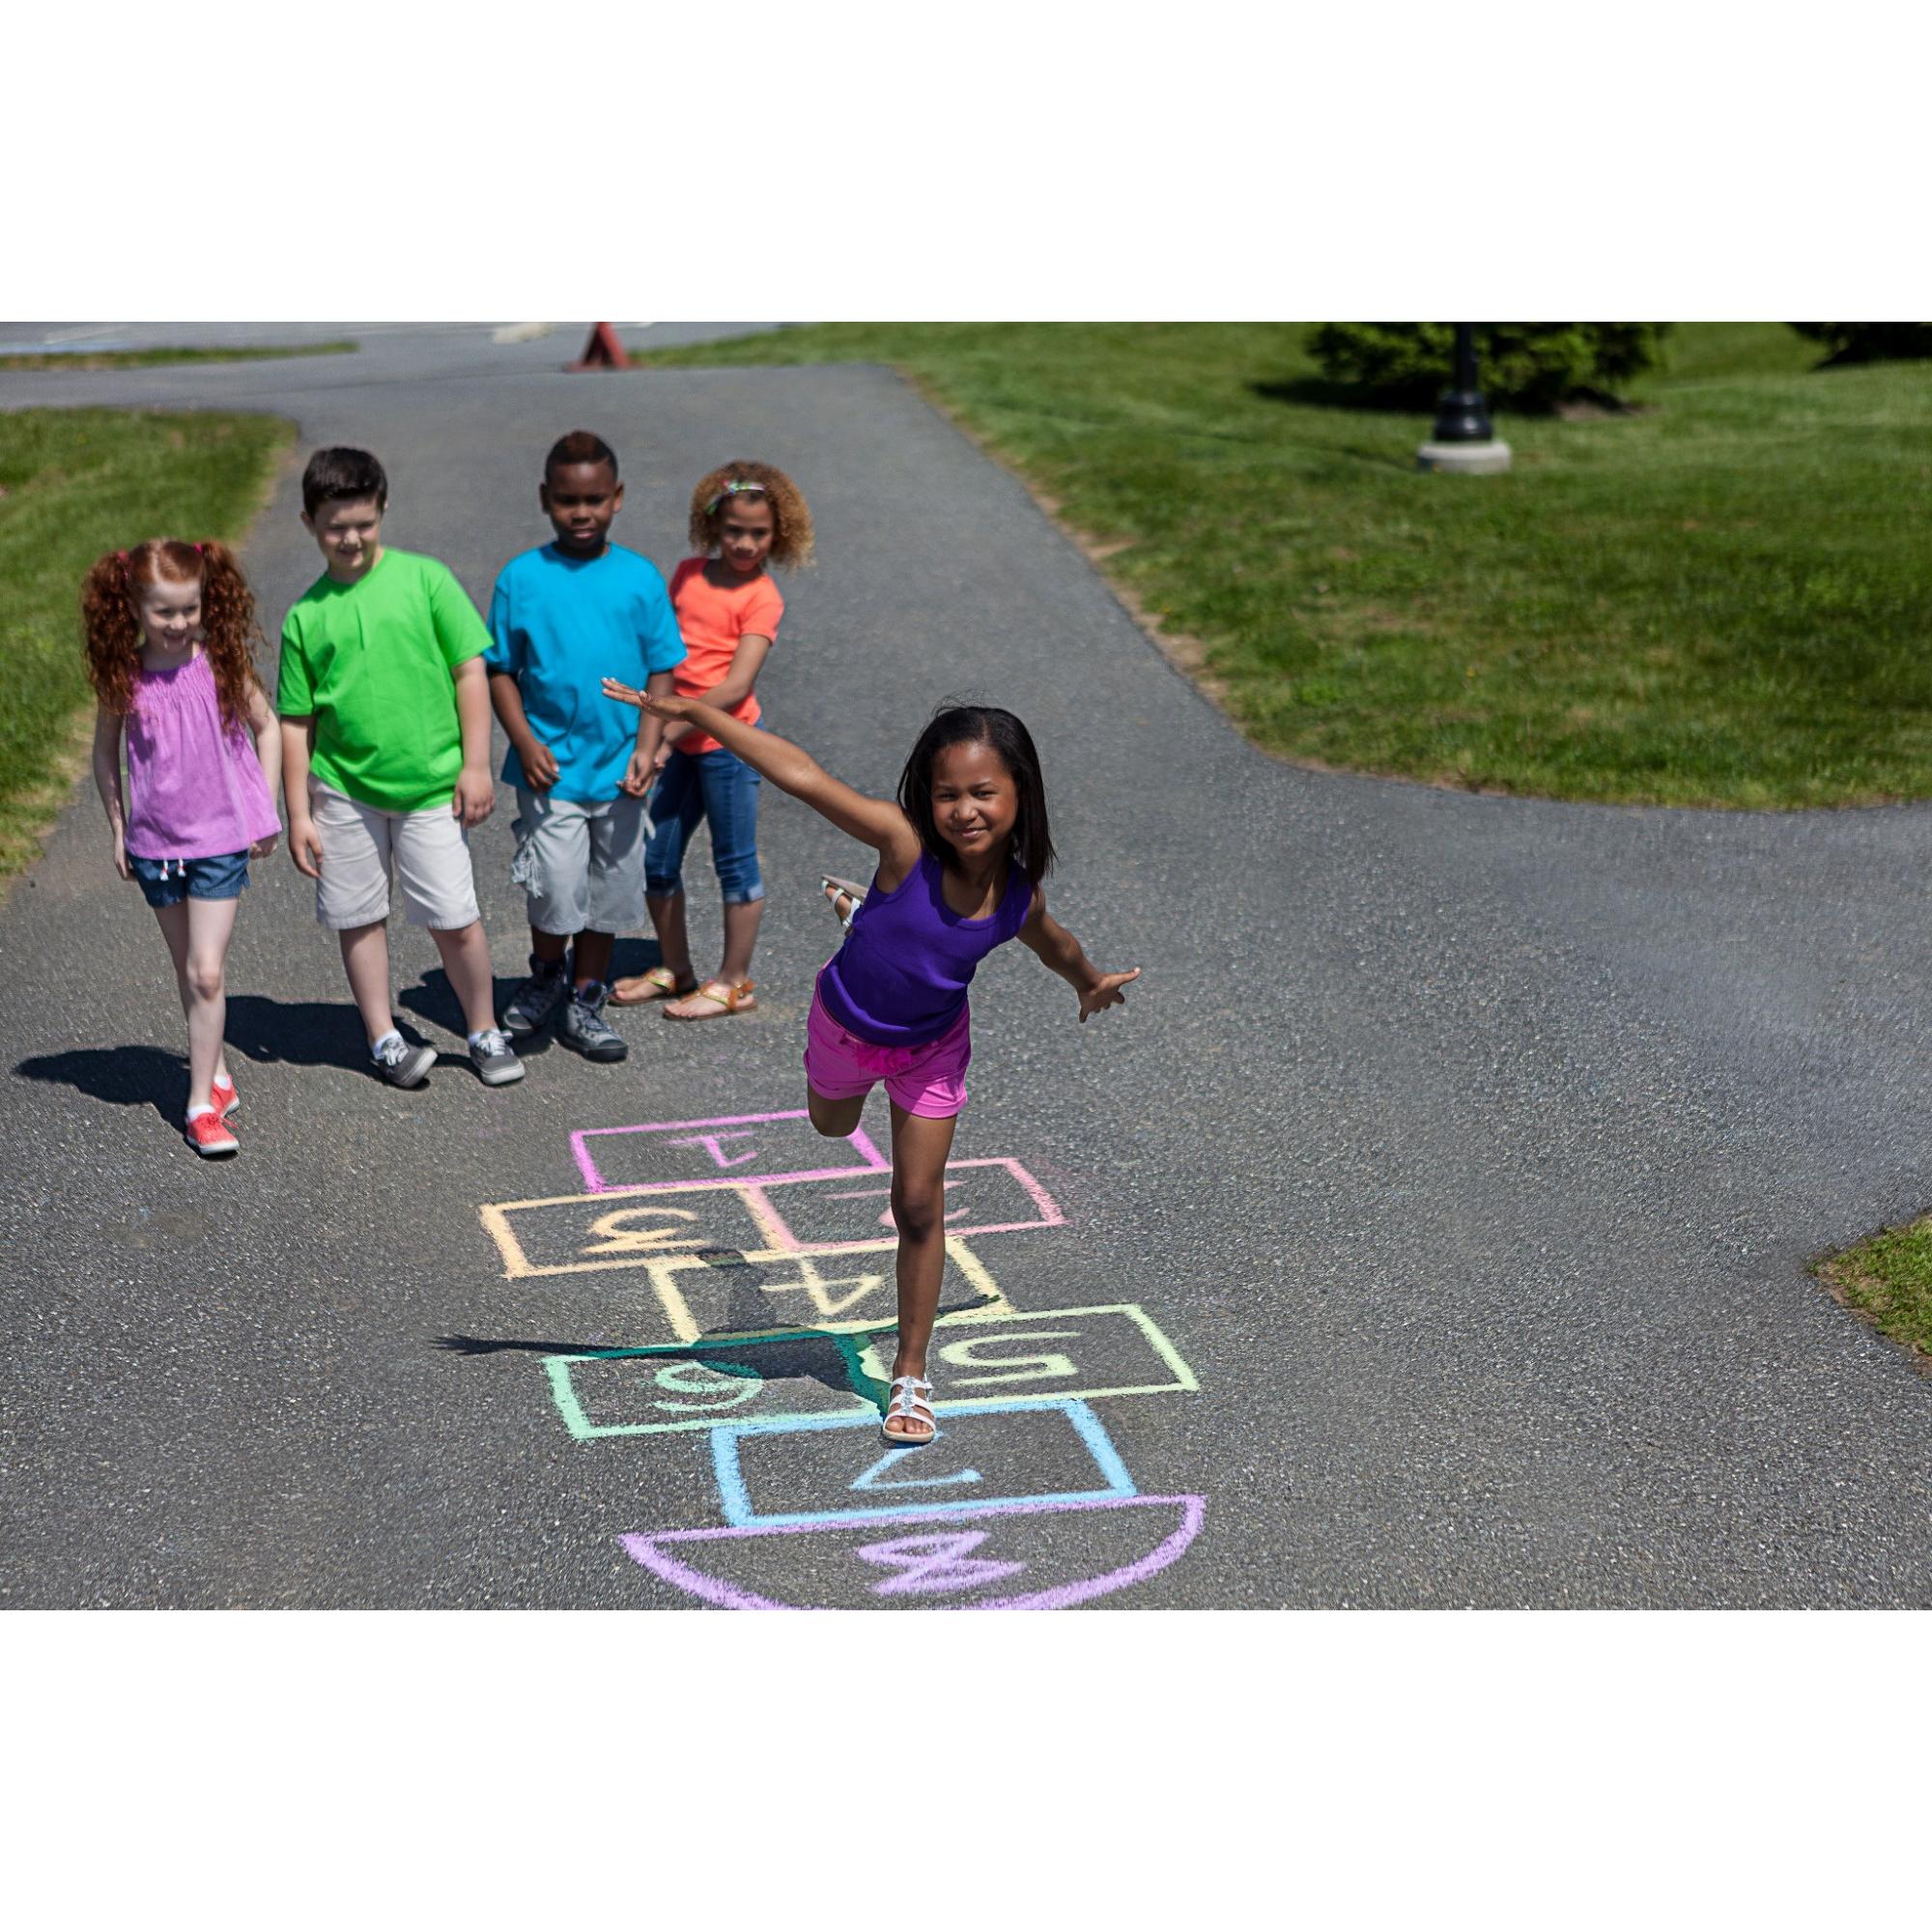 Crayola Washable Sidewalk Chalk Set, 48-Colors - image 5 of 9